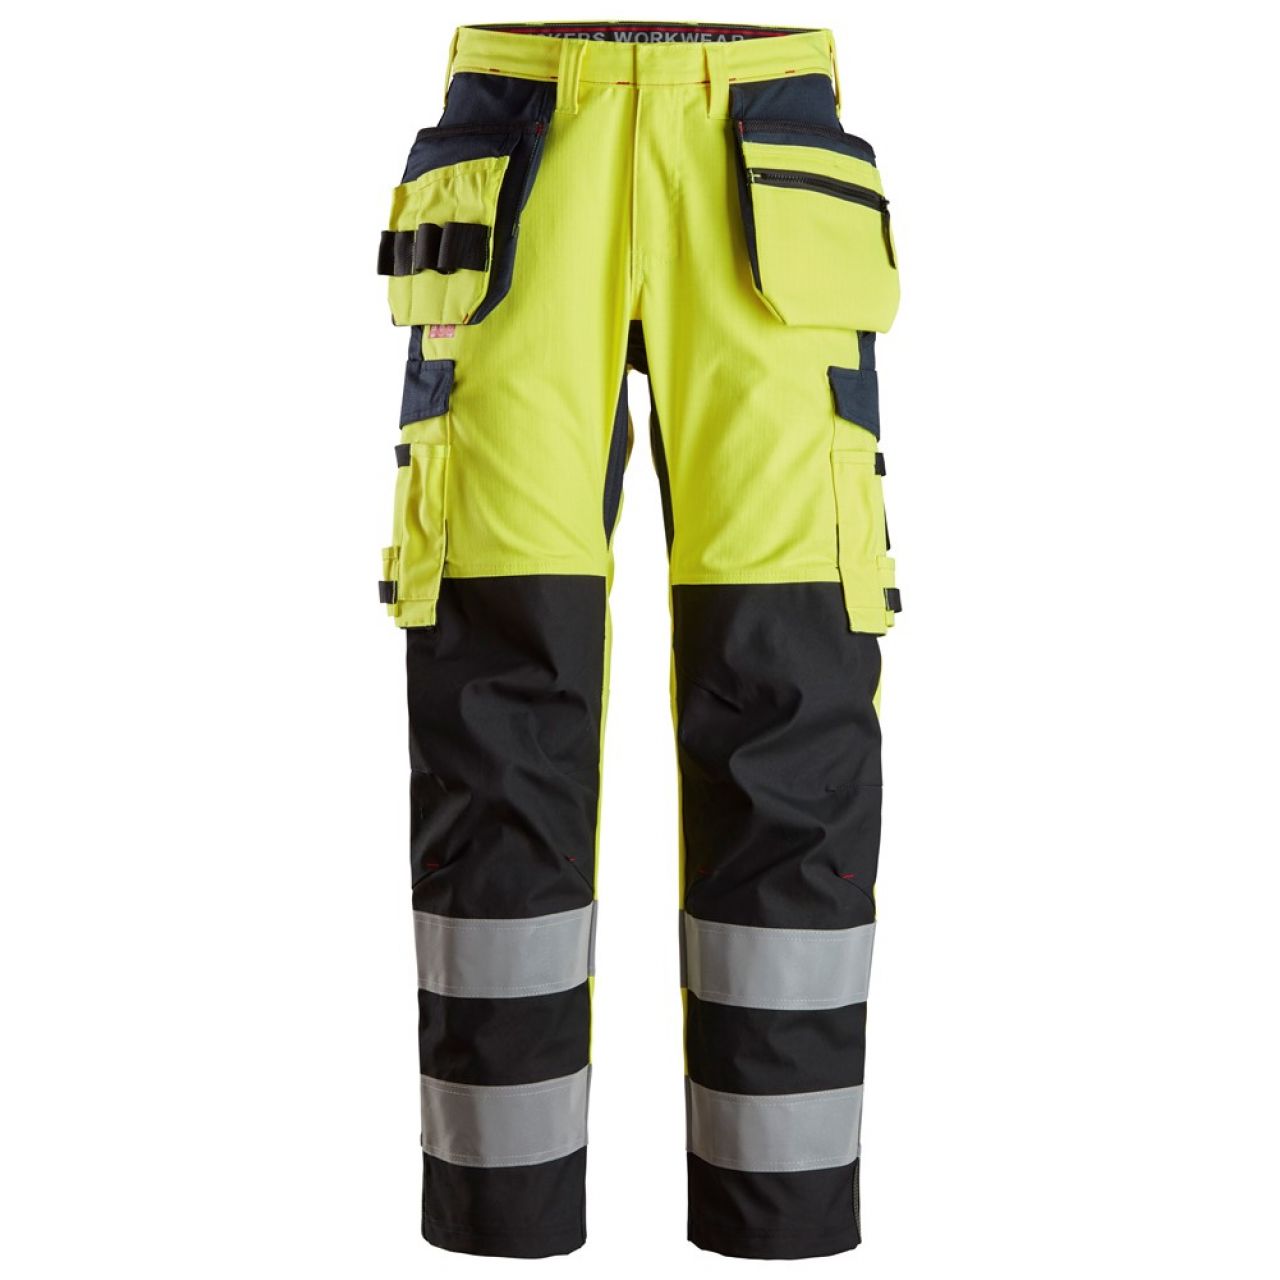 6264 Pantalones largos de trabajo de alta visibilidad clase 2 con bolsillos flotantes y espinilla reforzada ProtecWork amarillo-azul marino talla 154